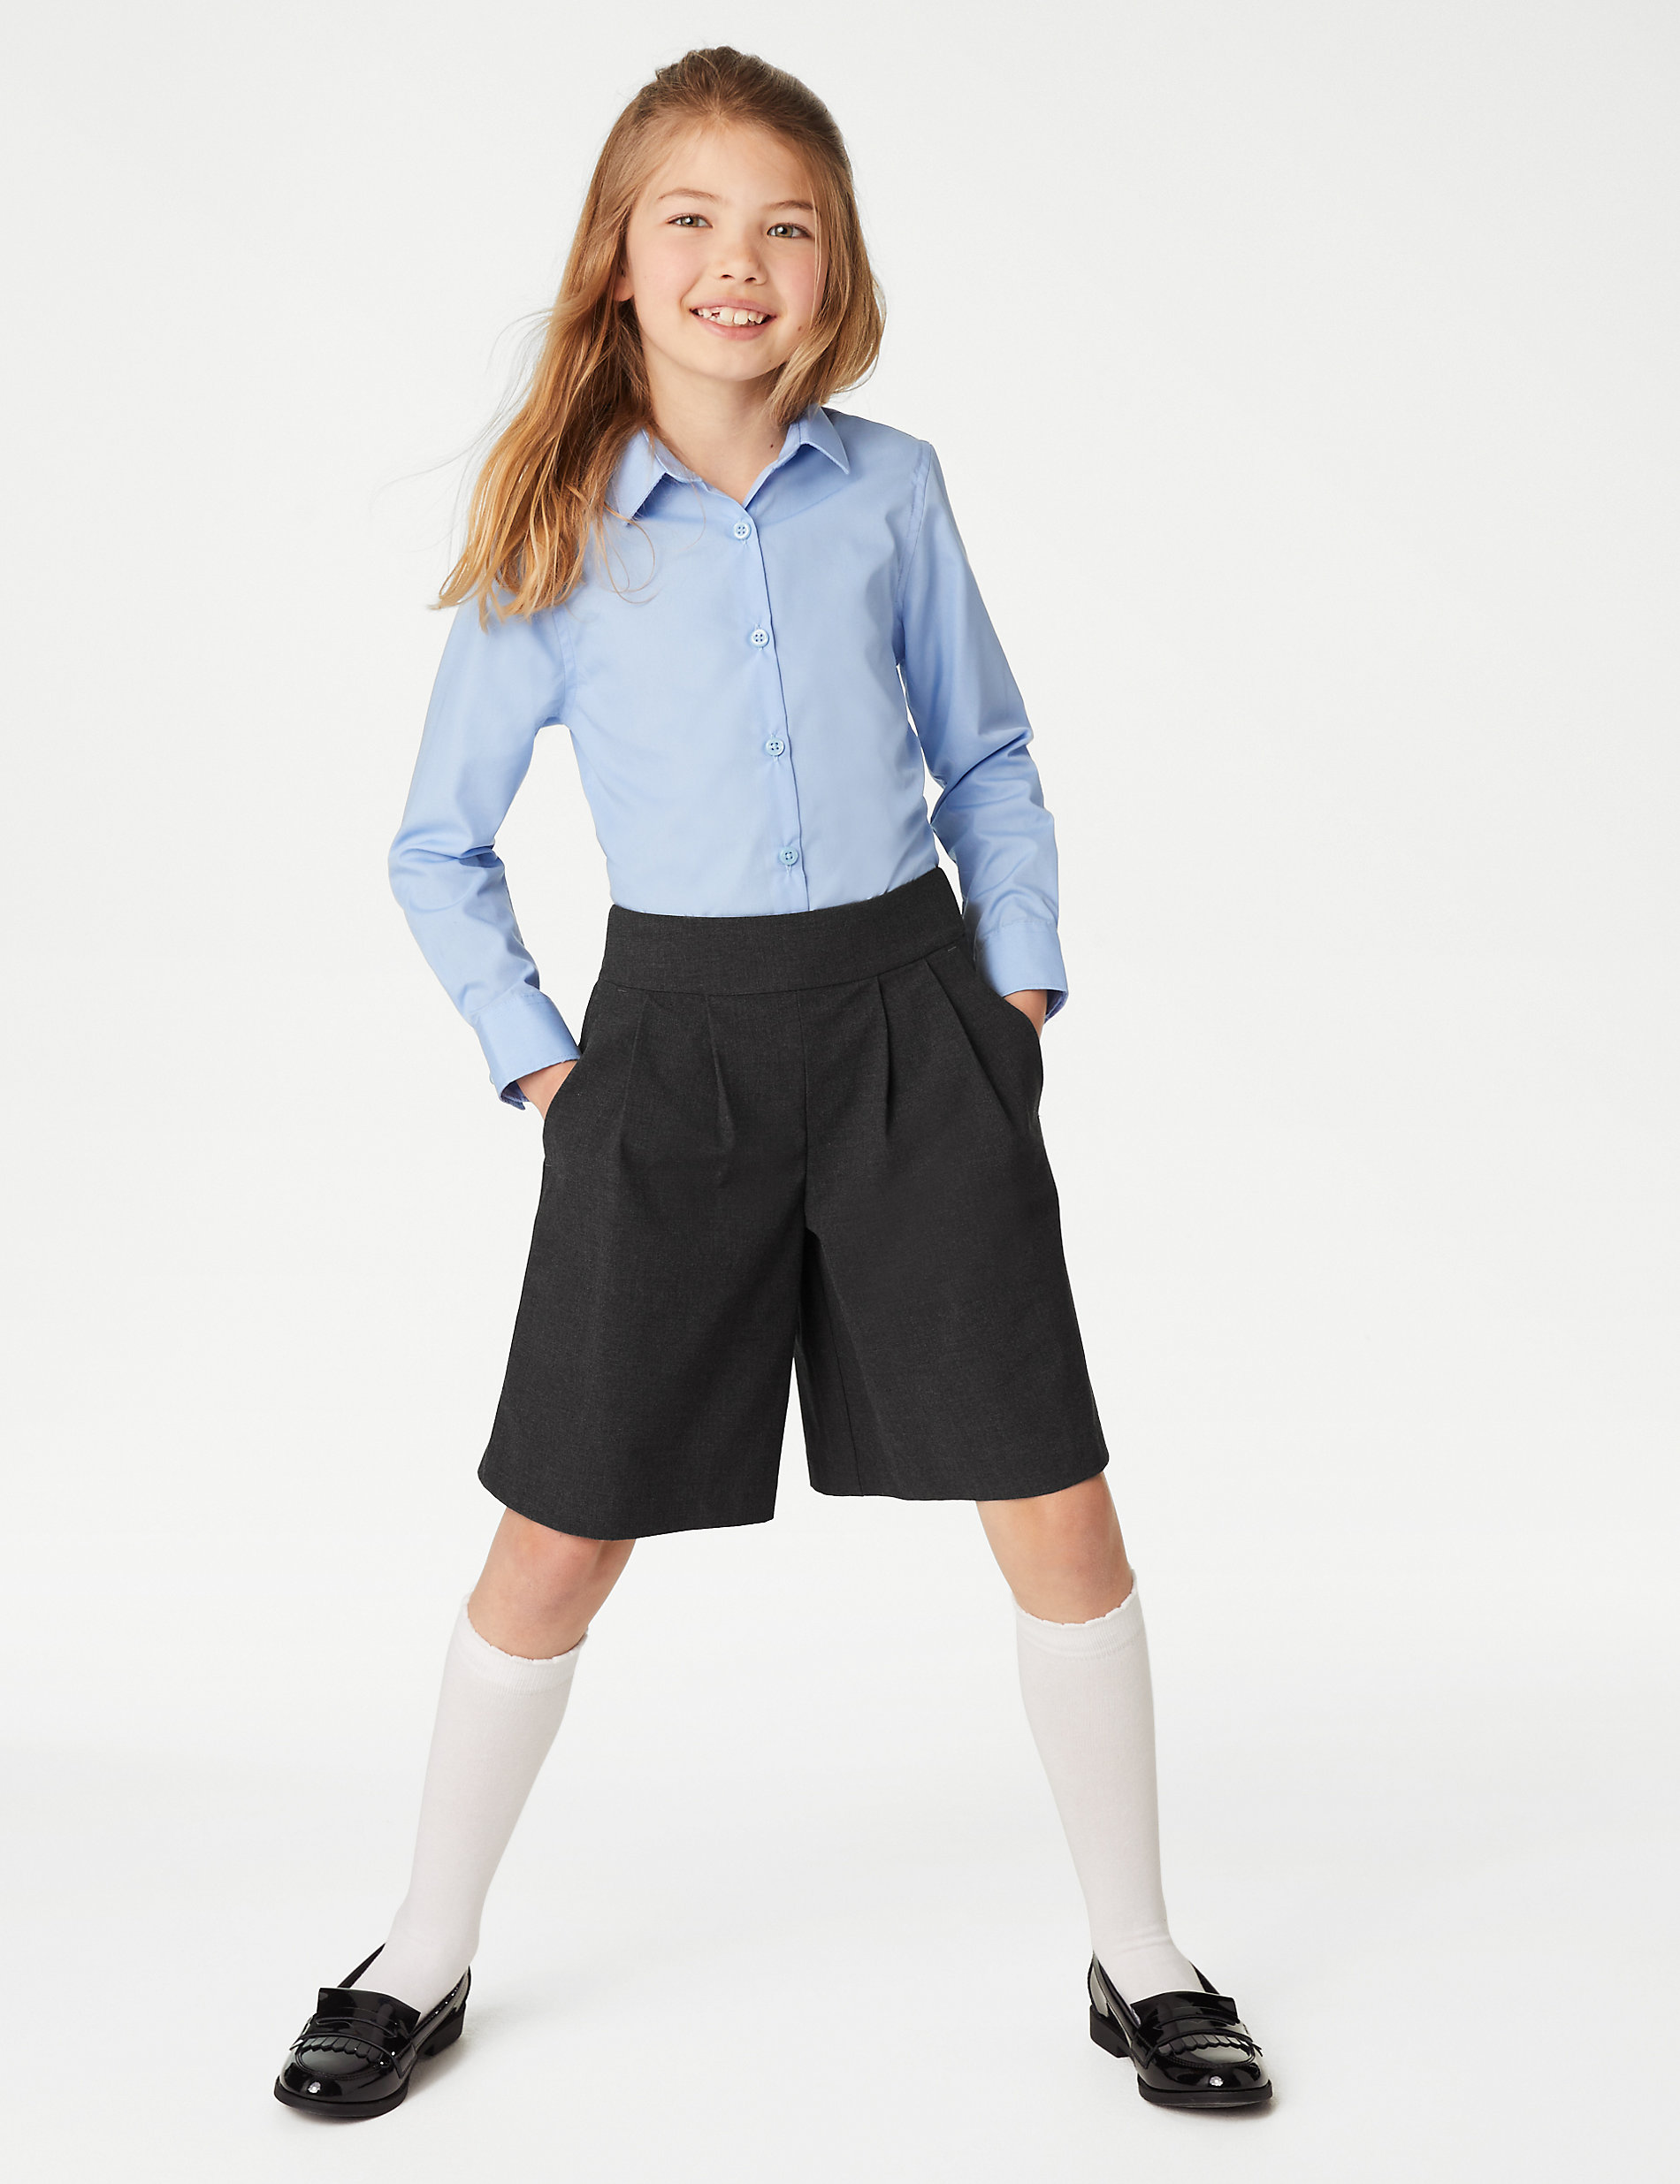 Falda pantalón escolar con pliegues para chicas (2-18 años) | M&S US